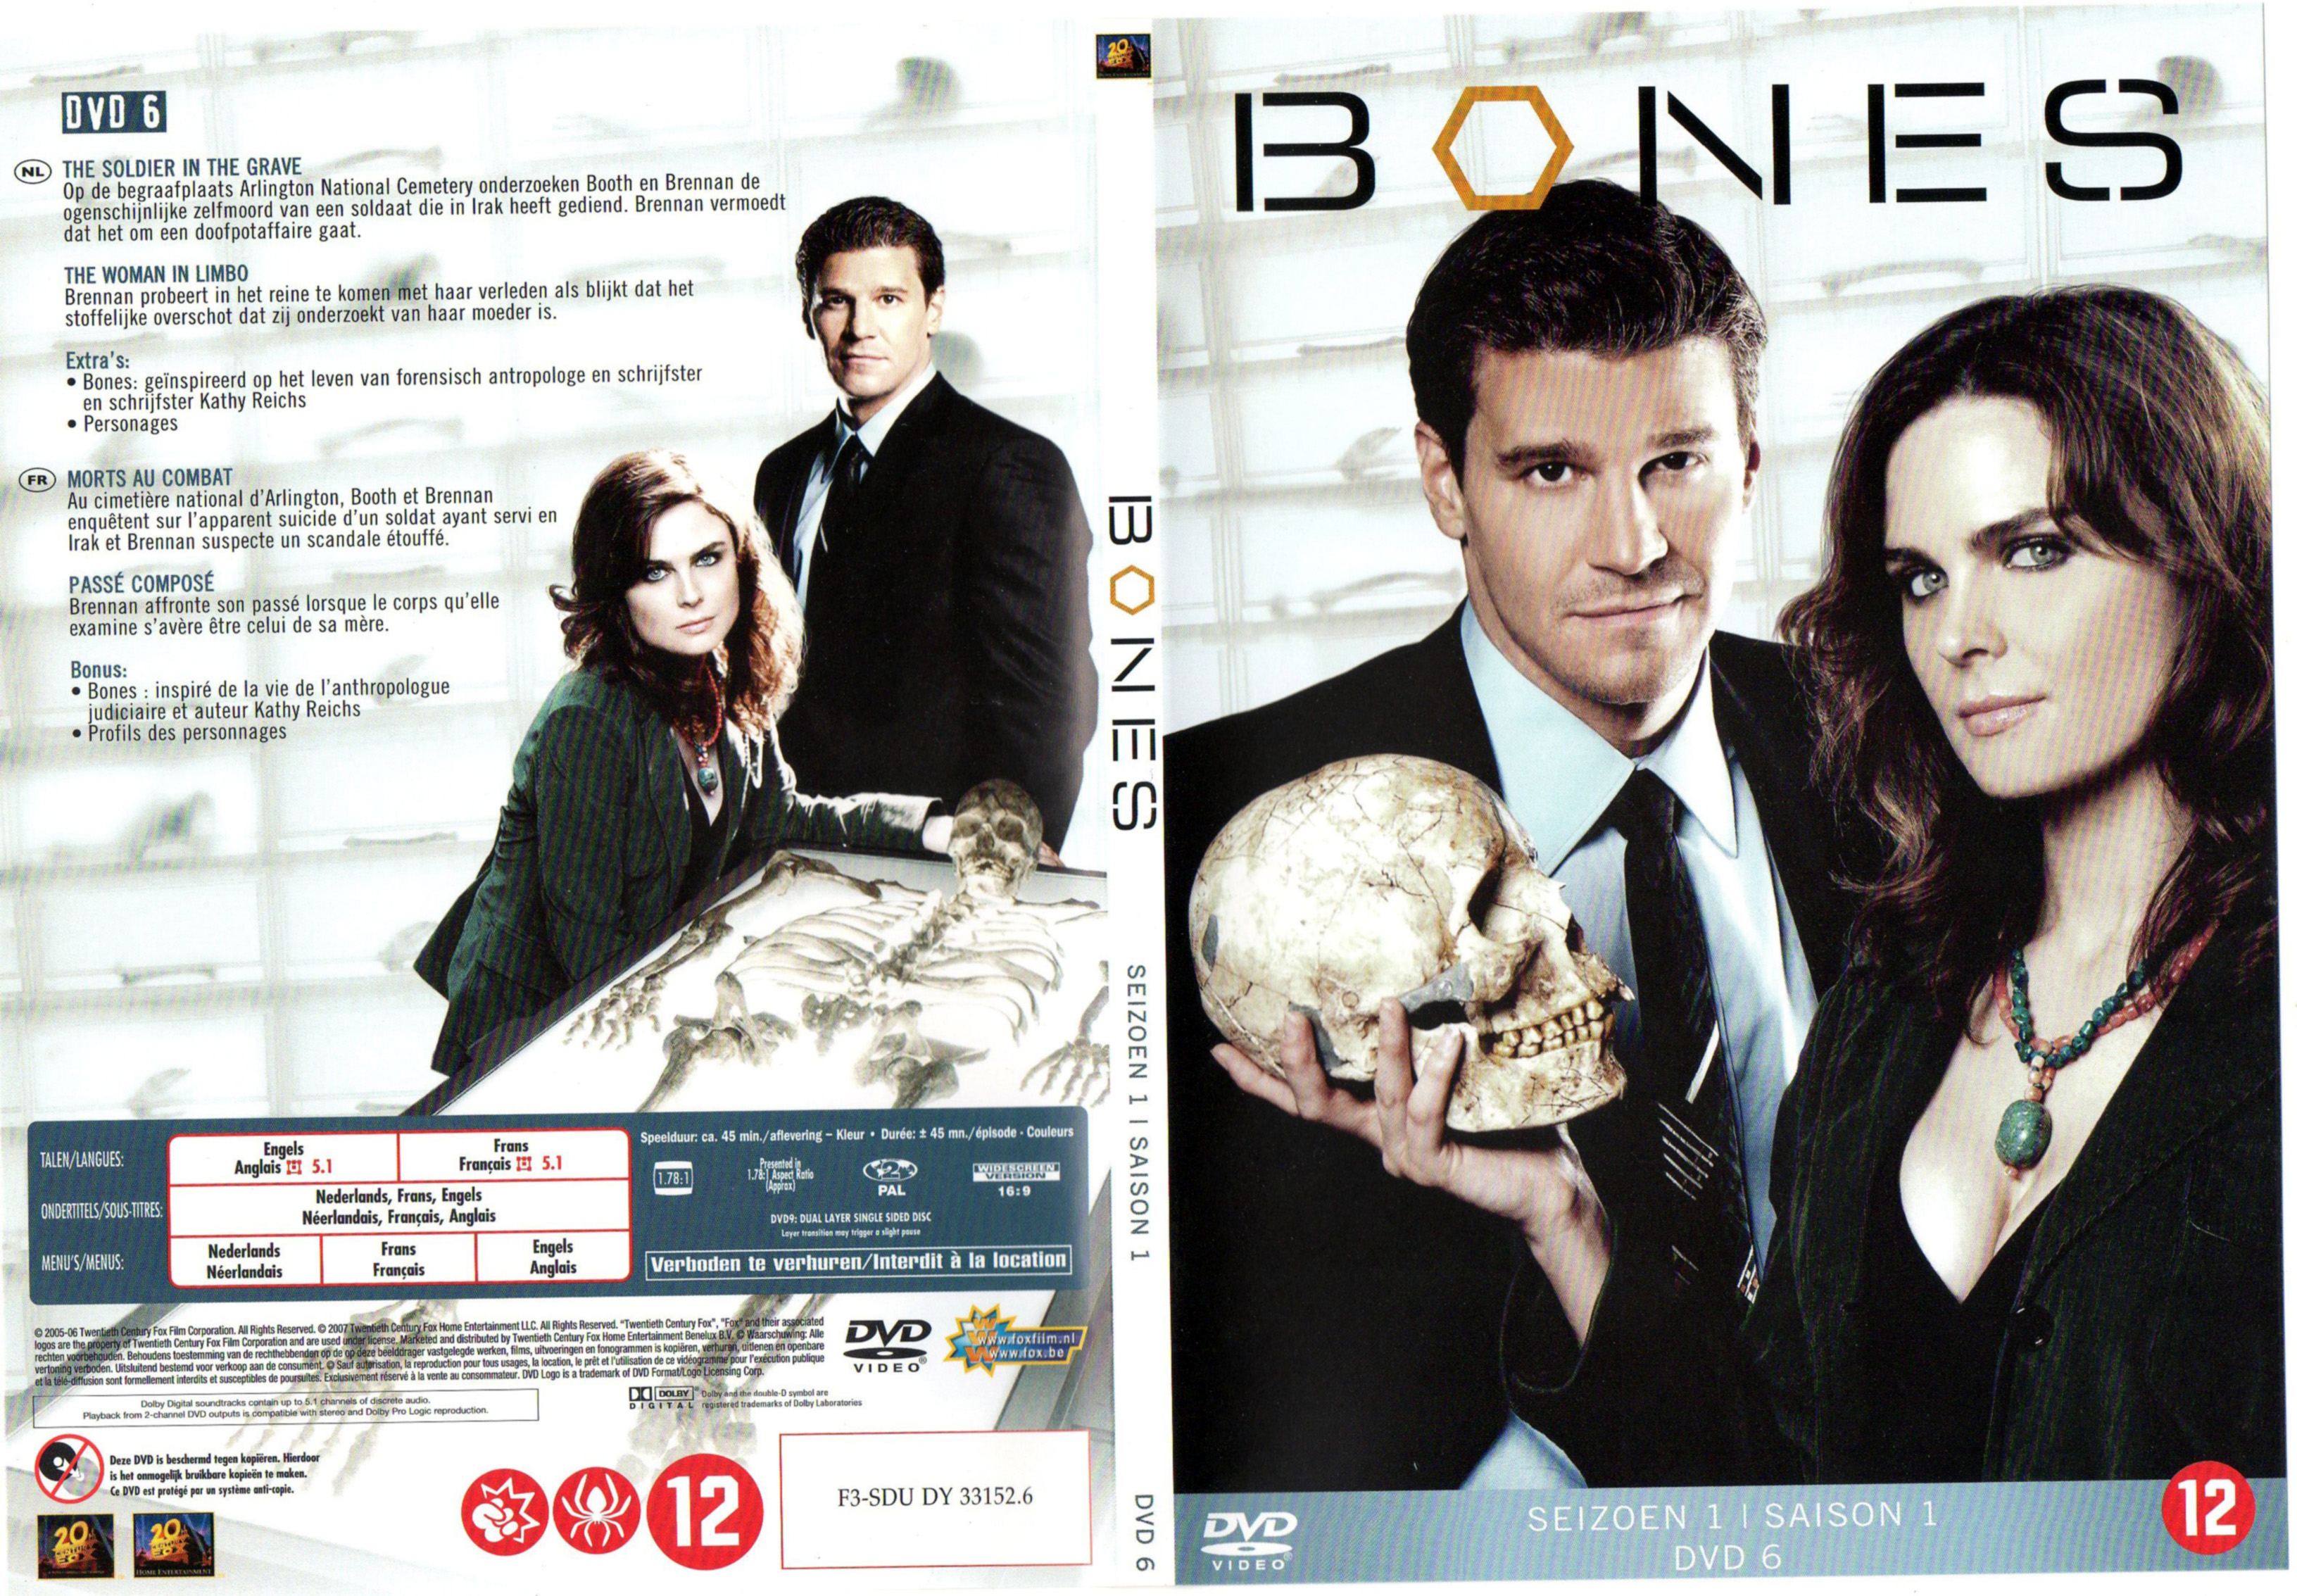 Jaquette DVD Bones Saison 1 DVD 6 v2